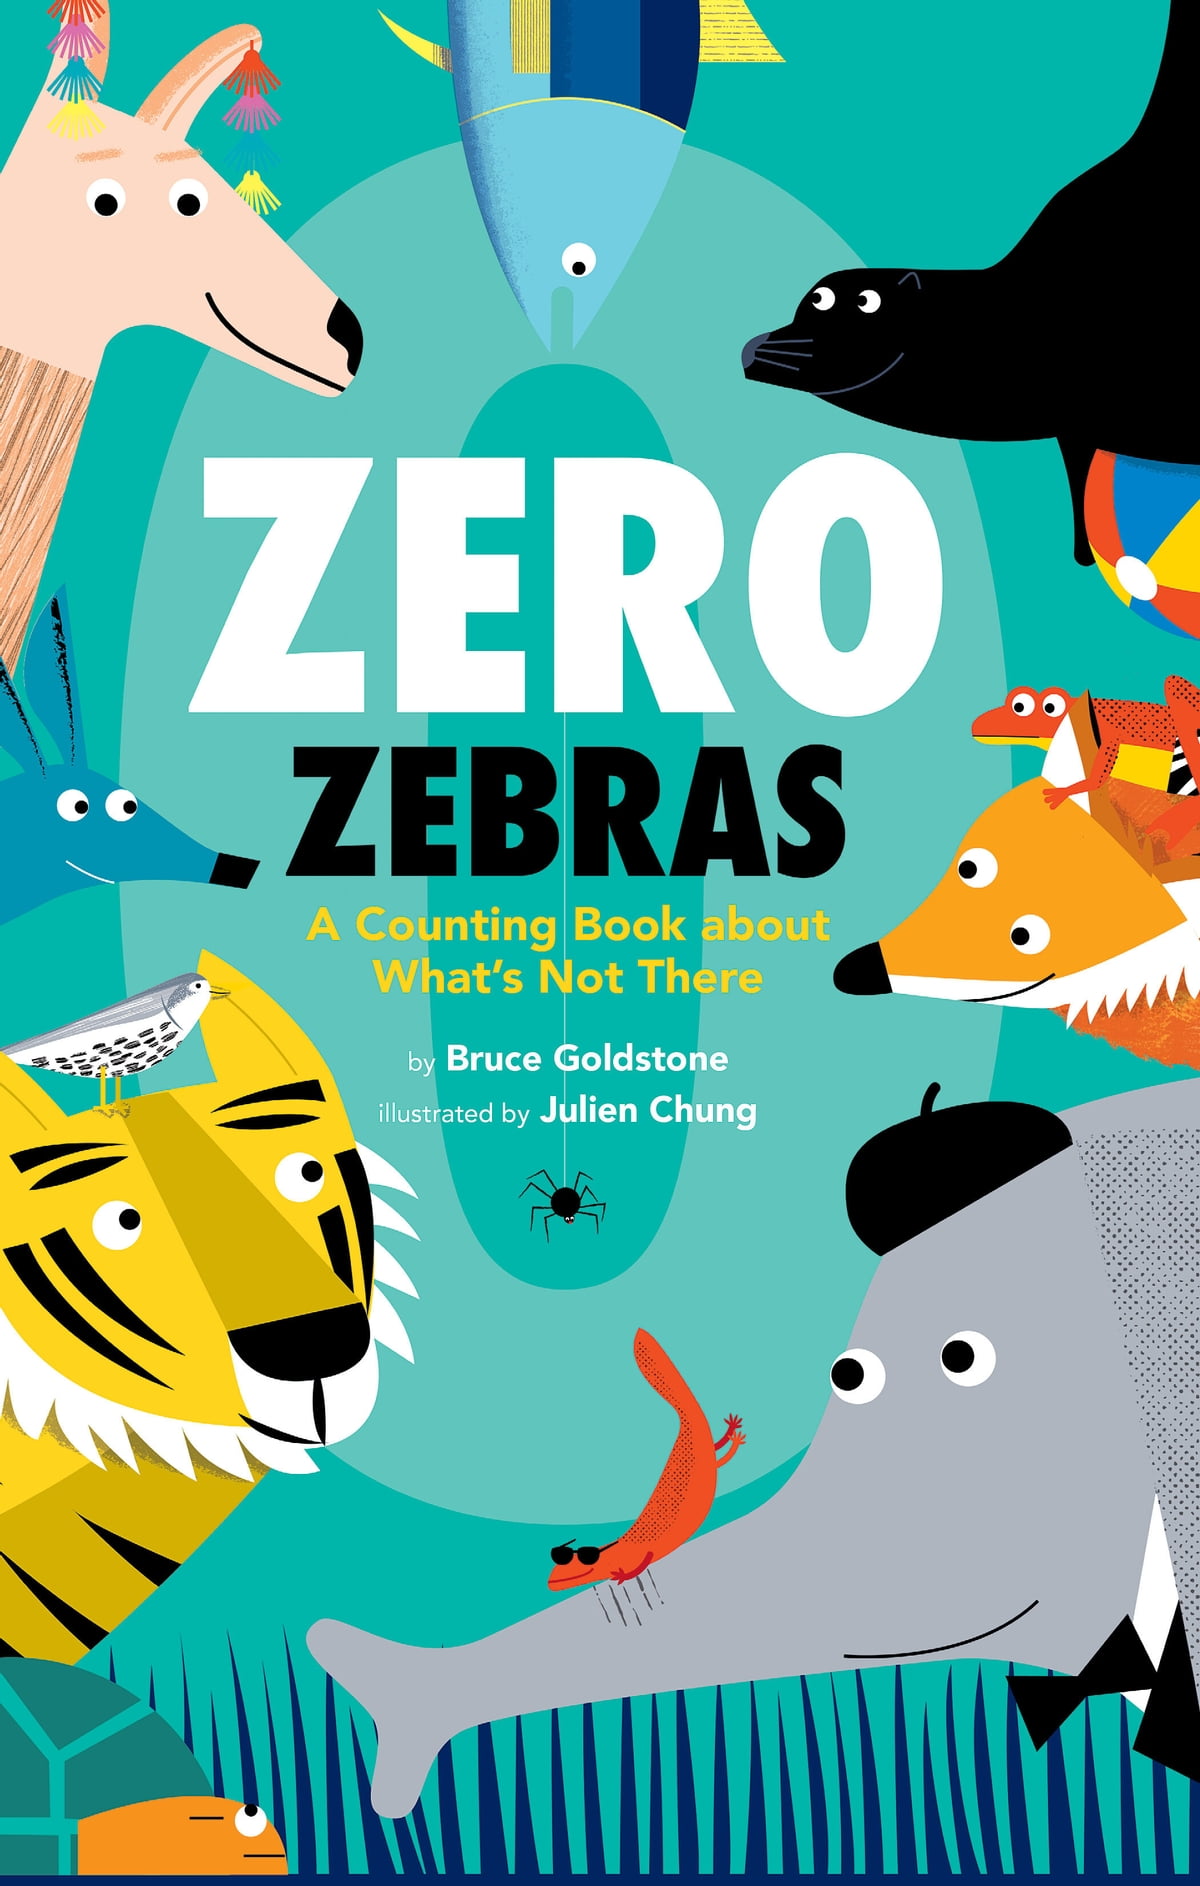 Image for "Zero Zebras"